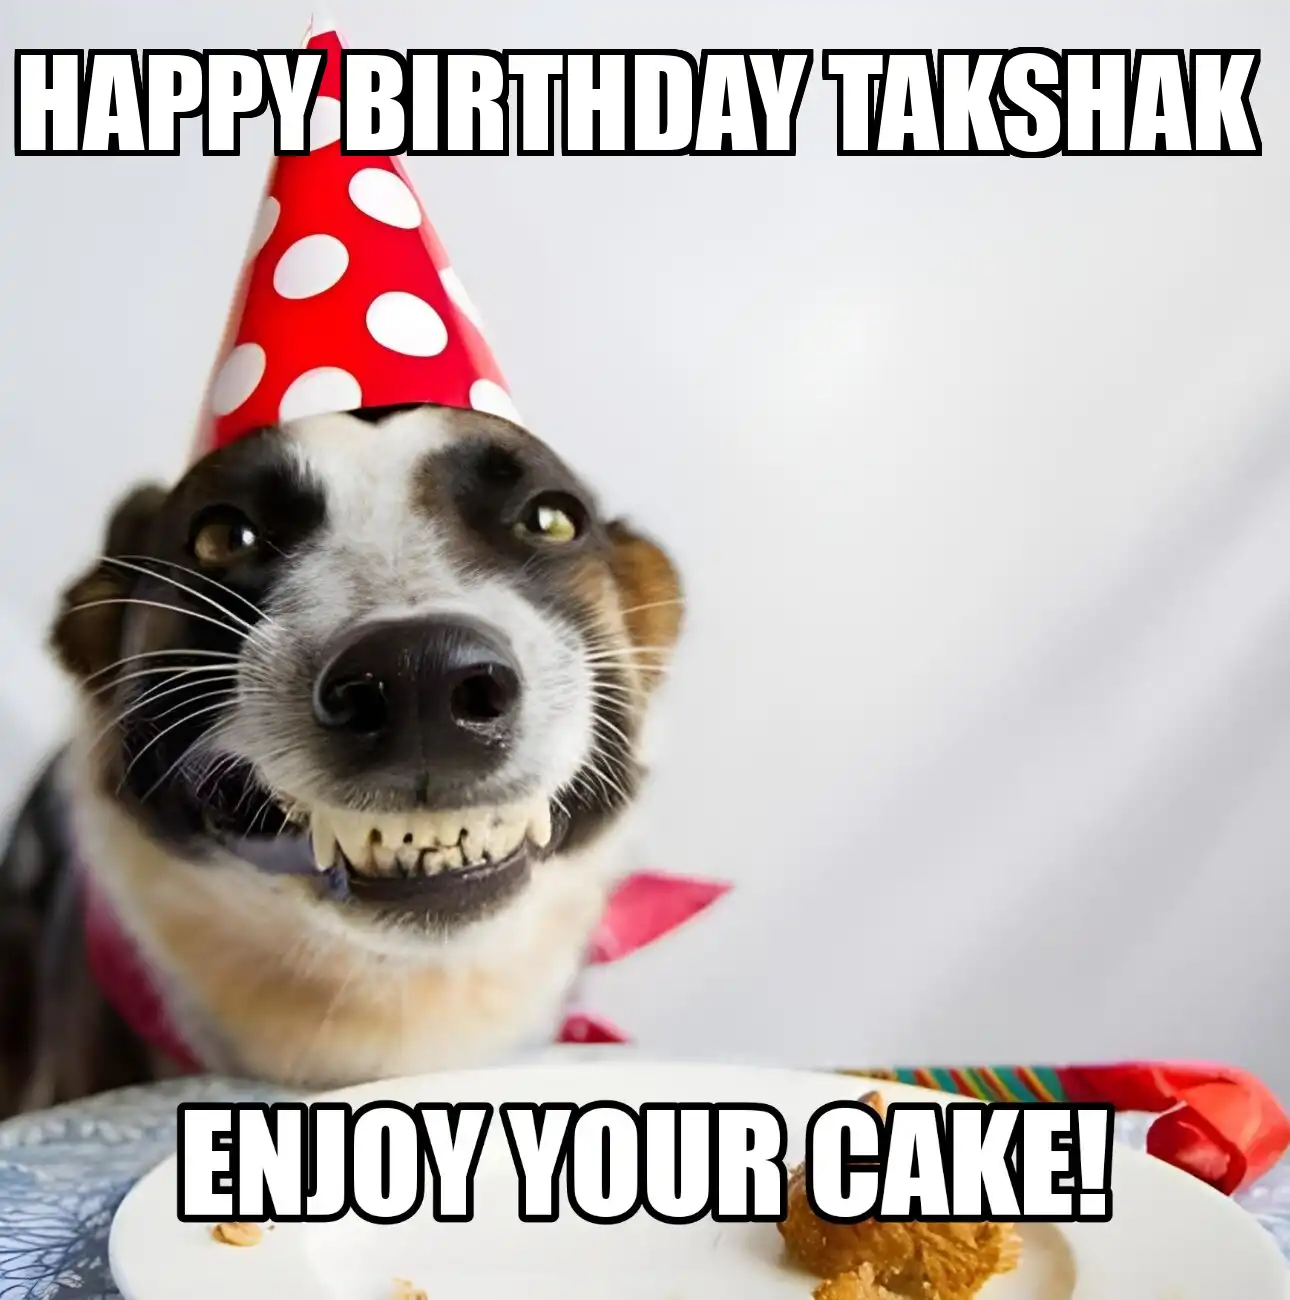 Happy Birthday Takshak Enjoy Your Cake Dog Meme